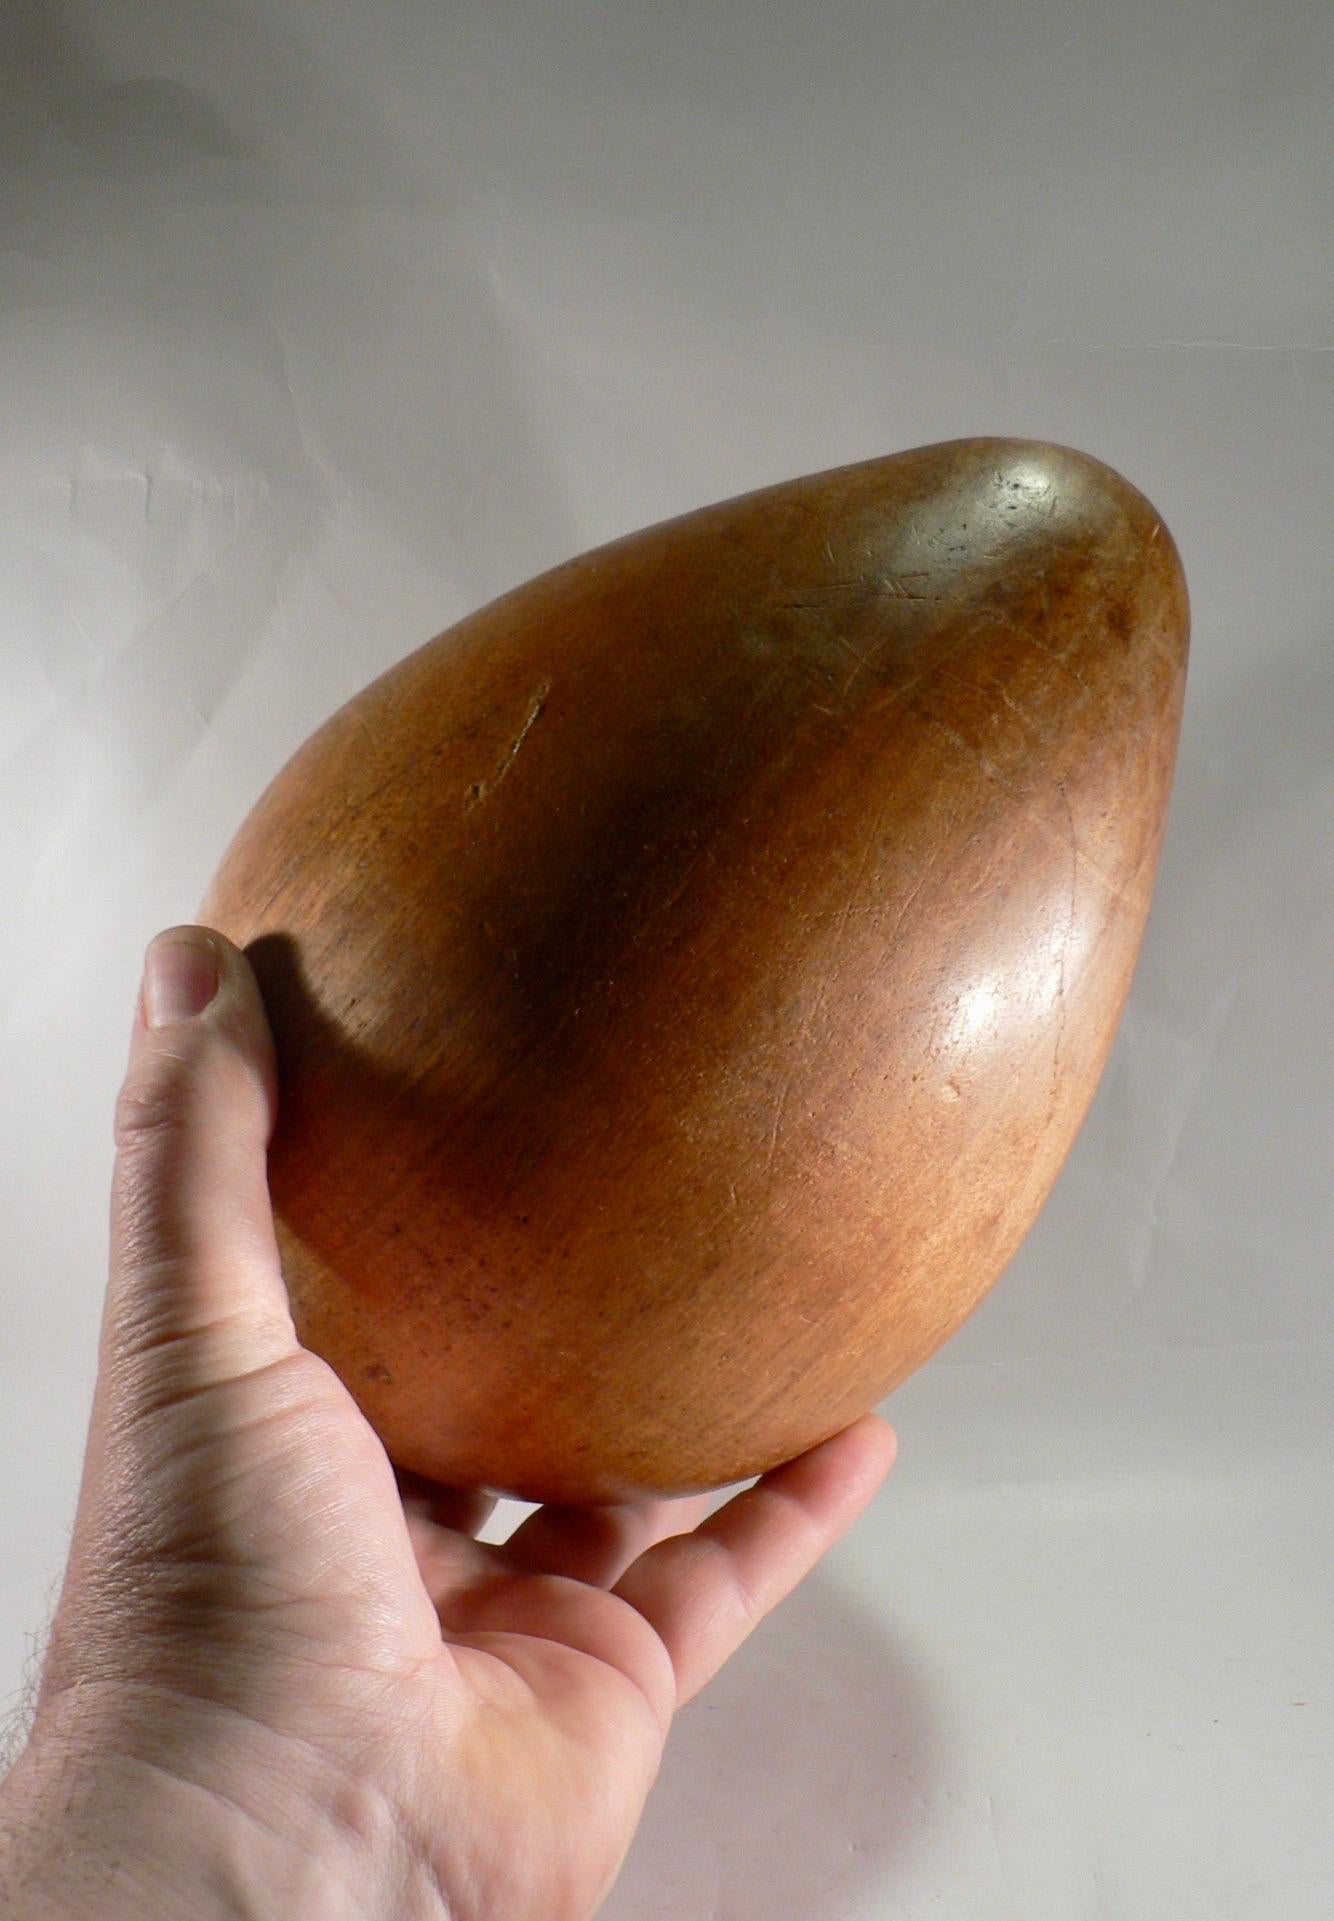 Ein geschnitztes Holzei, wahrscheinlich in den 1950er Jahren in Frankreich hergestellt. Diese Art von Objekten war damals sehr beliebt und wird oft als schöner Dekorationsgegenstand betrachtet. Geschnitzte Eier wurden oft von Hand gefertigt, in der